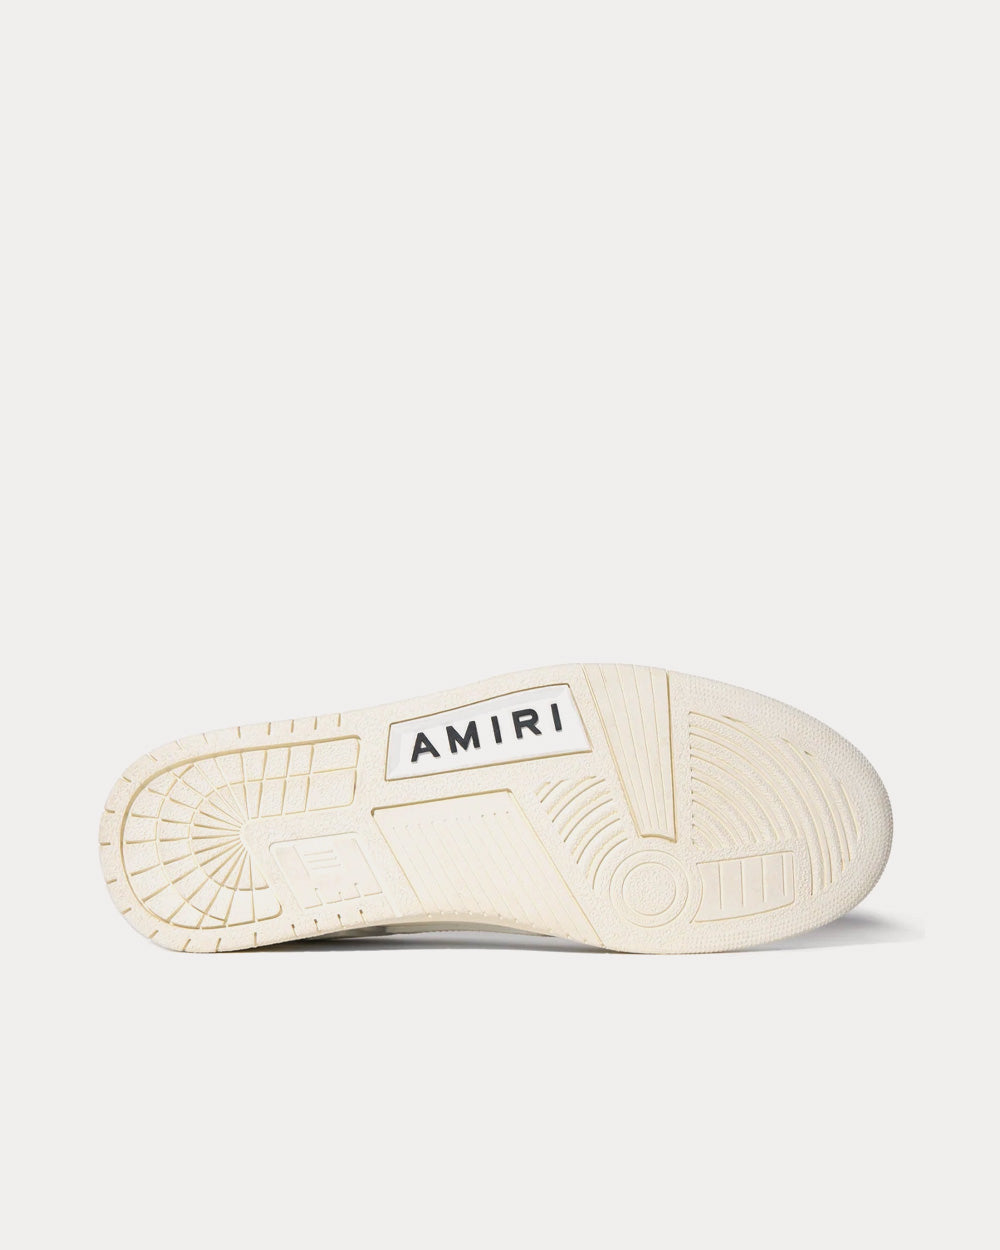 AMIRI - Skel-Top Low Vintage White Low Top Sneakers